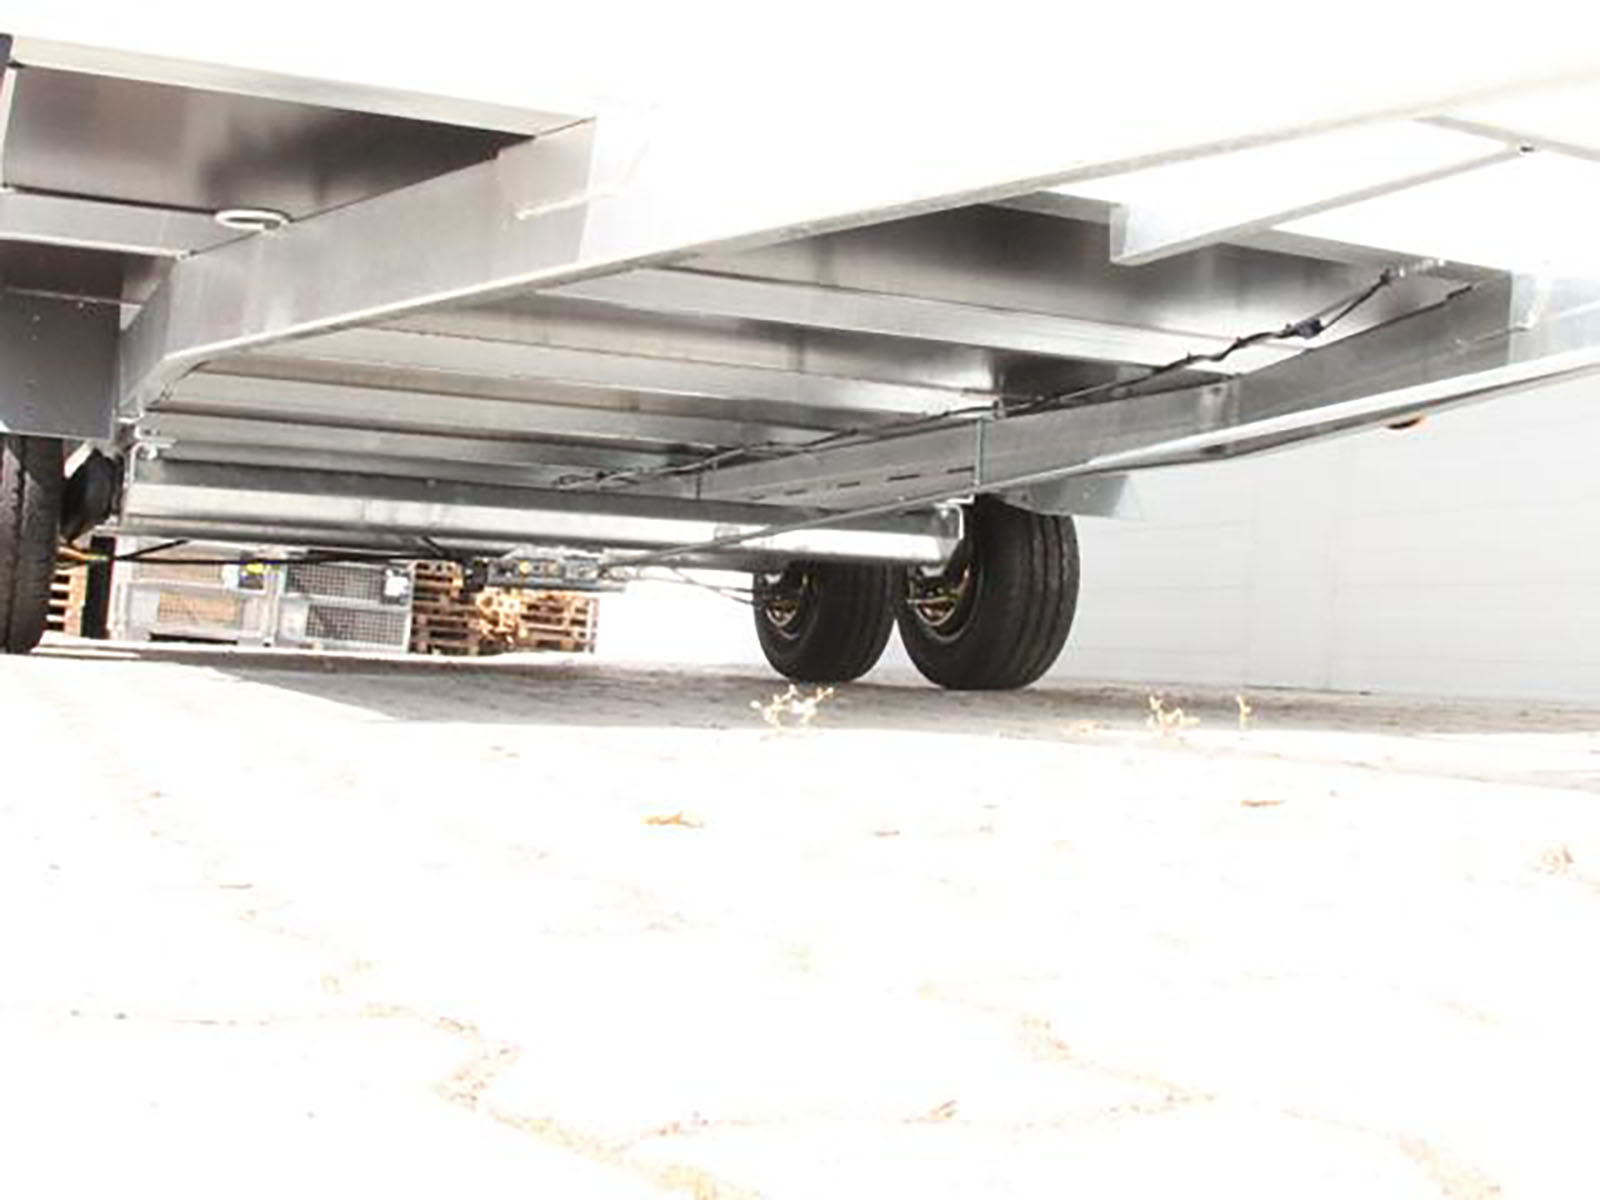 Sonstige-Koffer-Anhaenger-Unsinn-Kofferanhaenger-UK-204x426cm-Hoehe-210cm-3-0t_Ko0401SoUn_8xE0lPqr5M4319.jpg